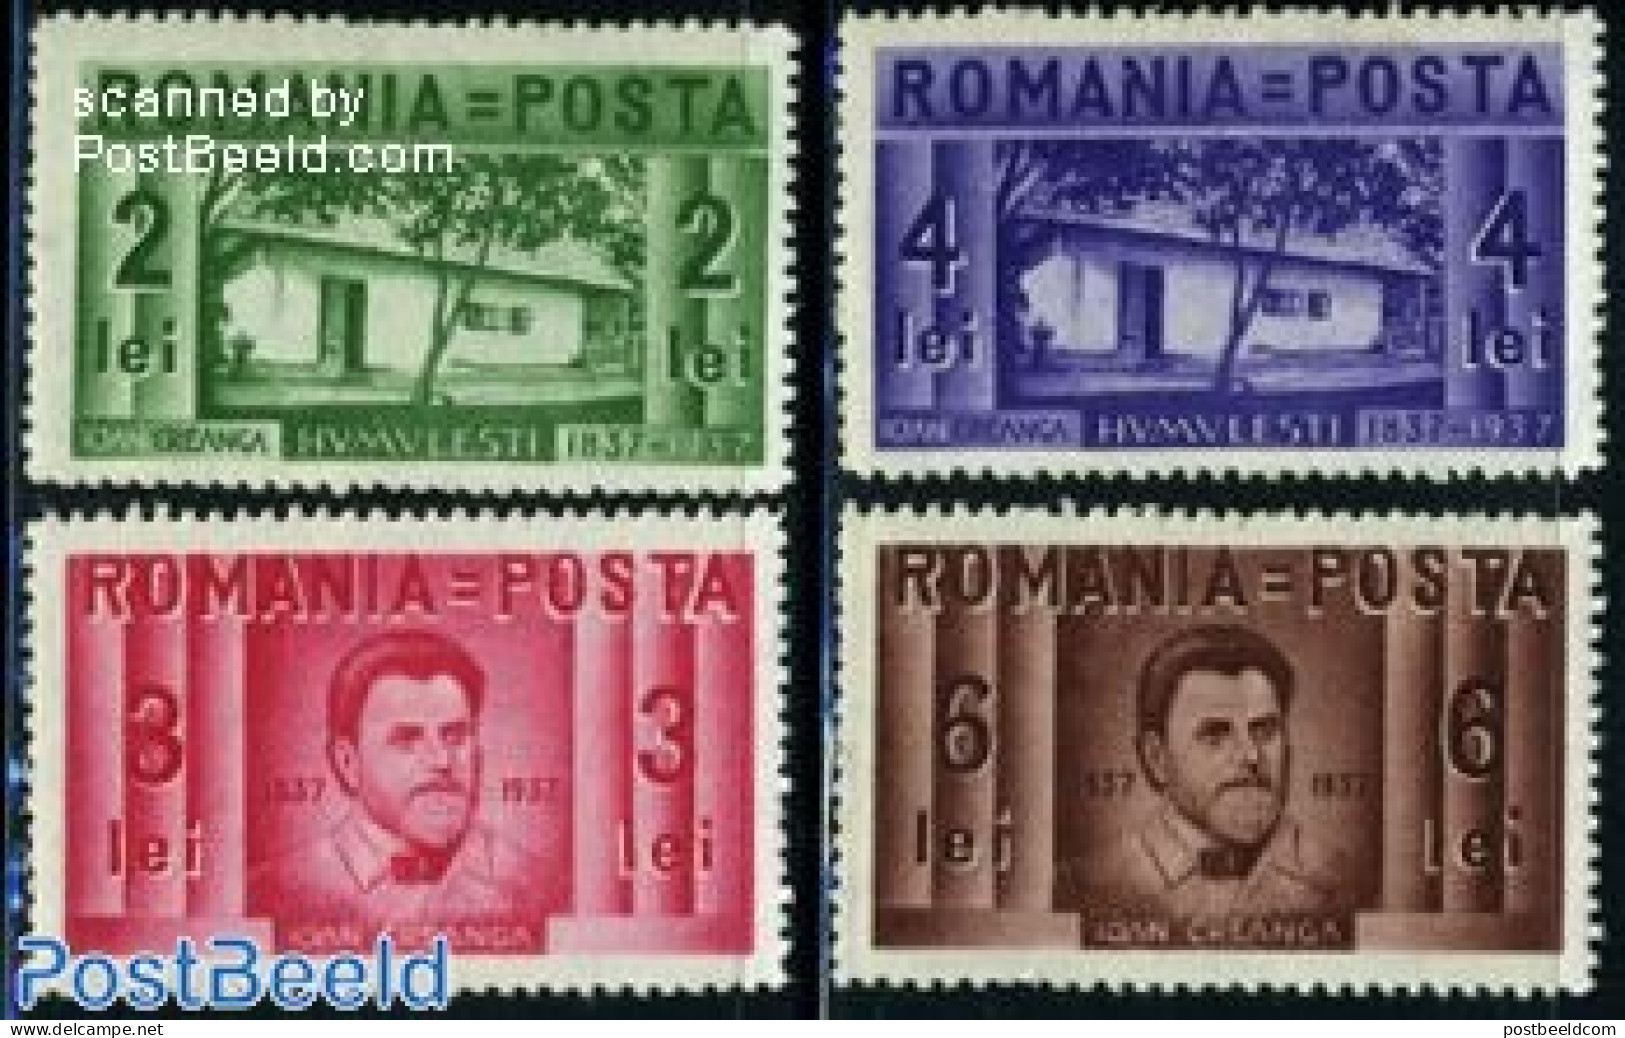 Romania 1937 J. Creanga 4v, Unused (hinged), Art - Authors - Ongebruikt